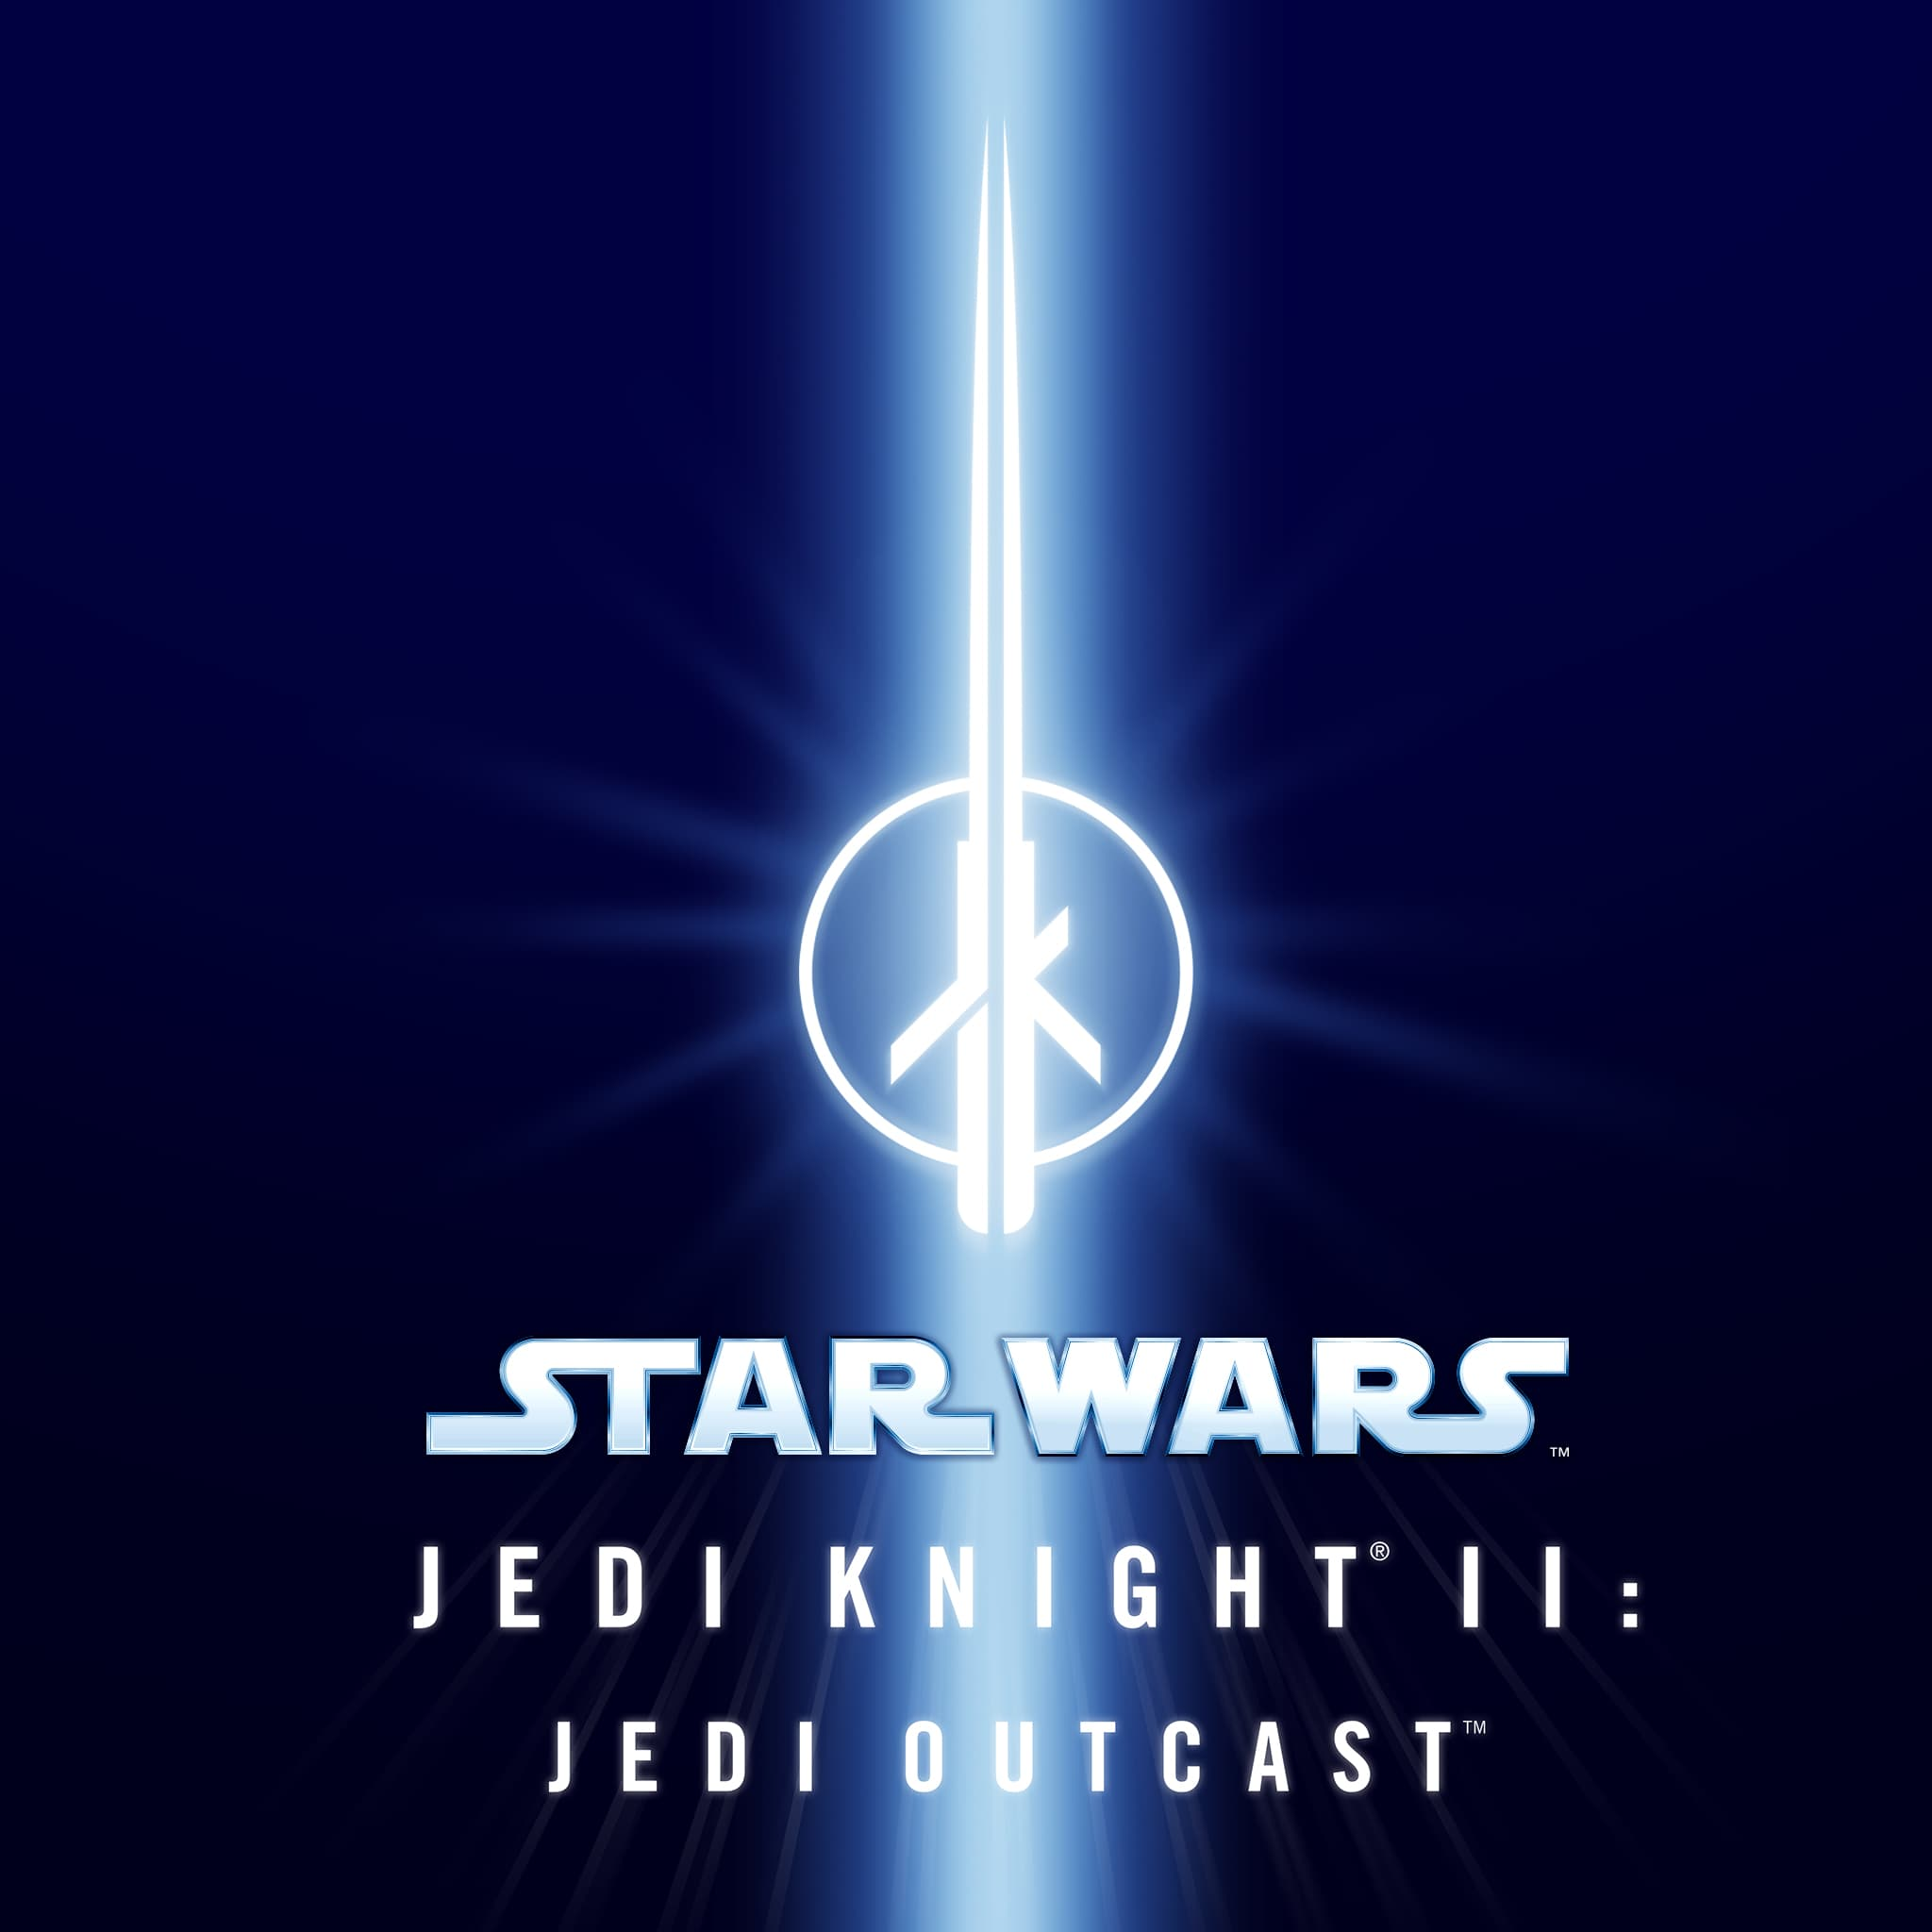 Star wars jedi knight 2 outcast. Star Wars Jedi Knight Jedi Academy. Star Wars Jedi Outcast 2. Star Wars Jedi Knight II Jedi Outcast. Star Wars Jedi Knight II Jedi Outcast обложка.